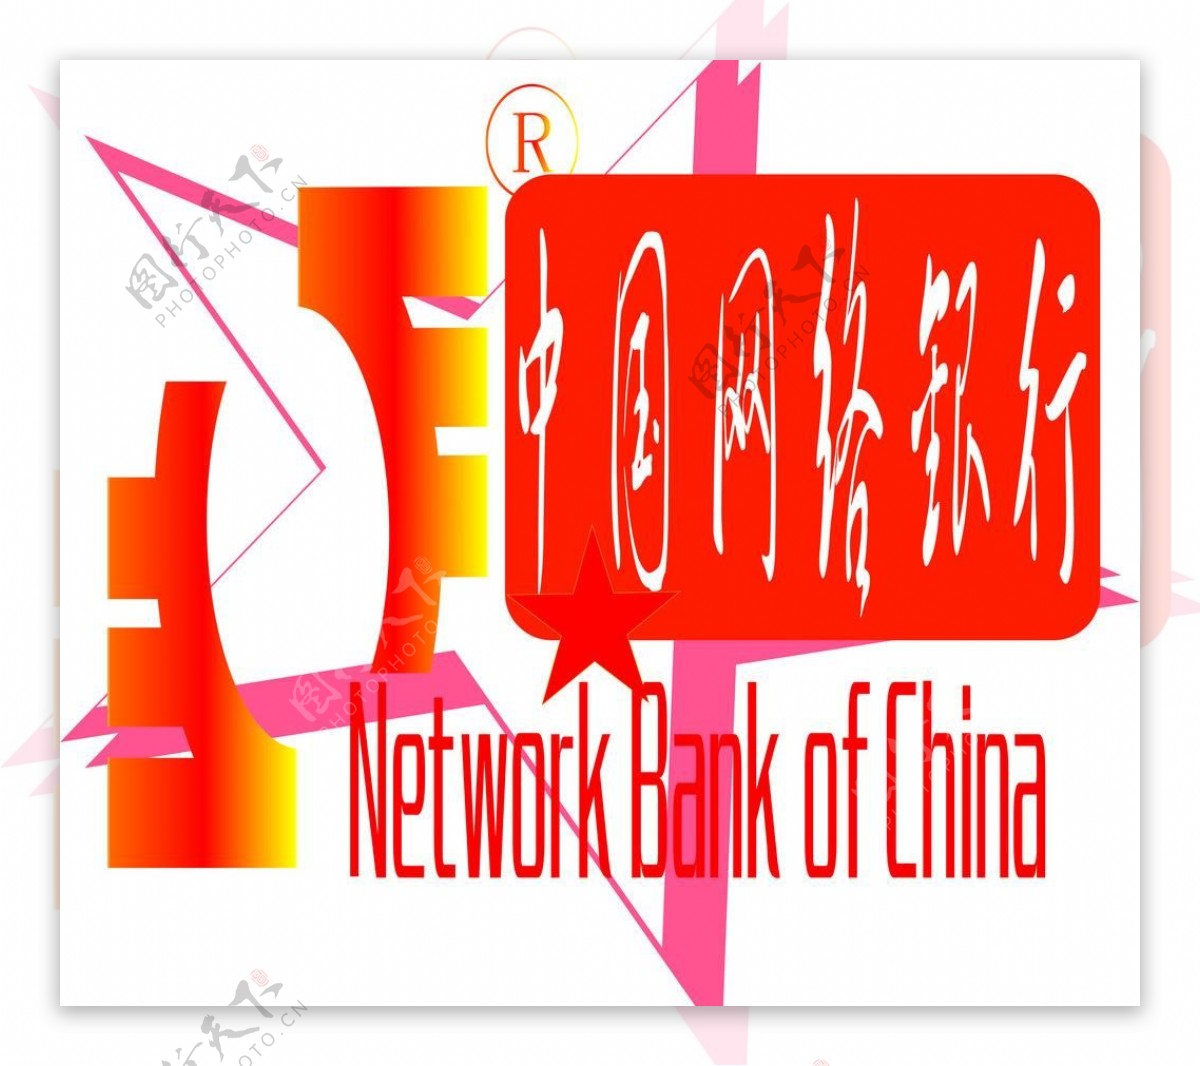 中国网络银行图片